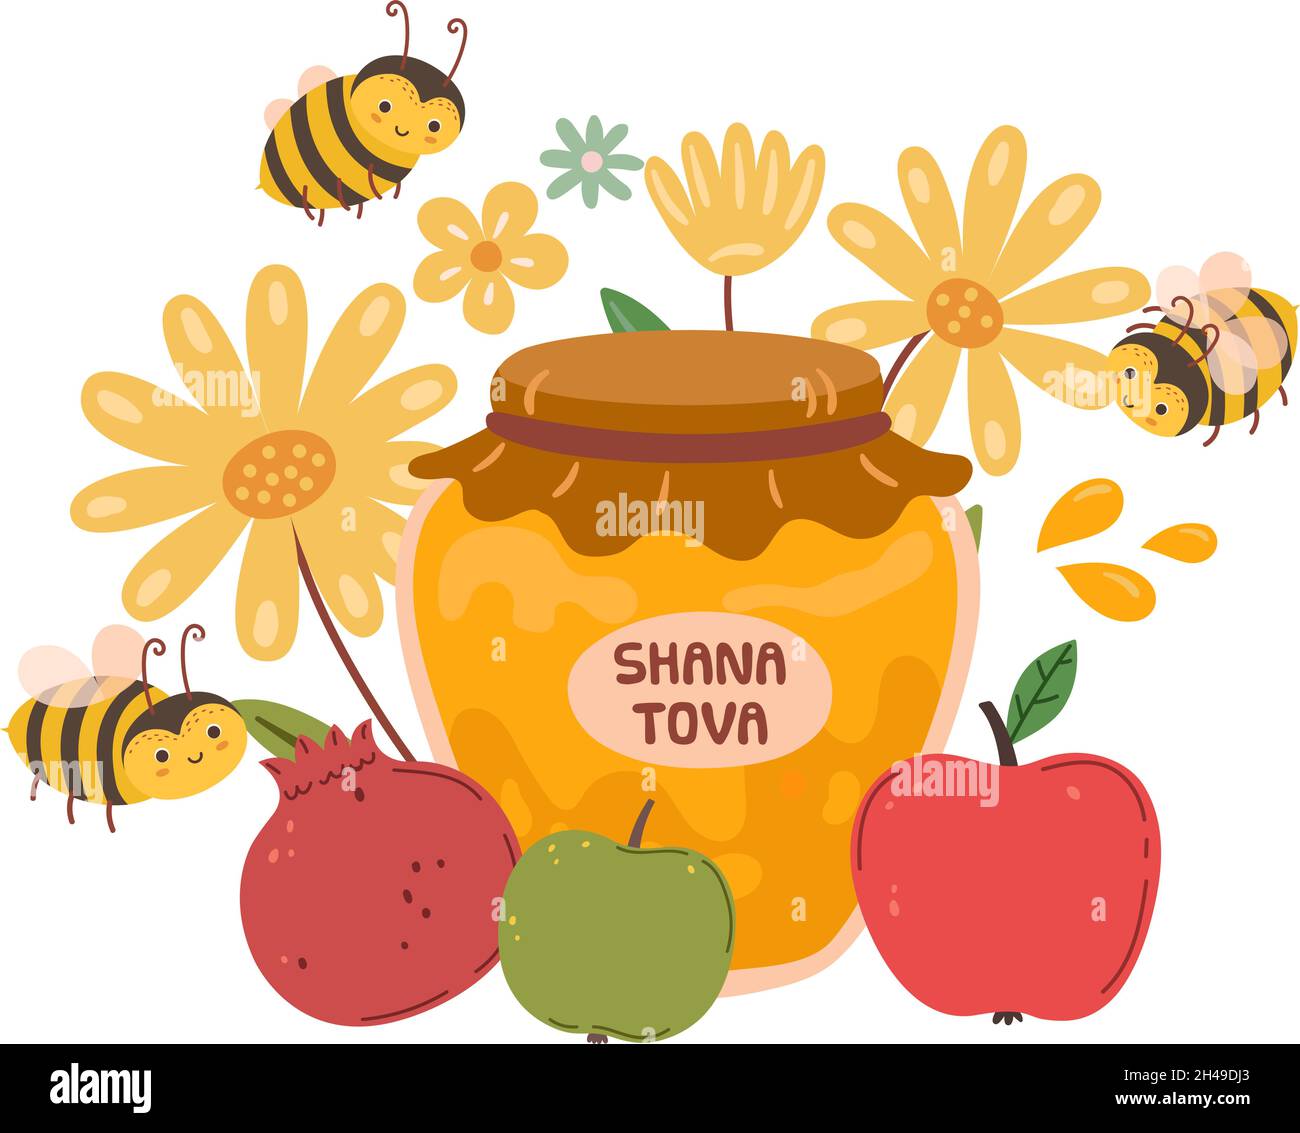 Jewish New Year festival, Rosh hashanah. Happy shana tova, flying bee. Holiday symbols honey, apple and pomegranate vector concept Stock Vector